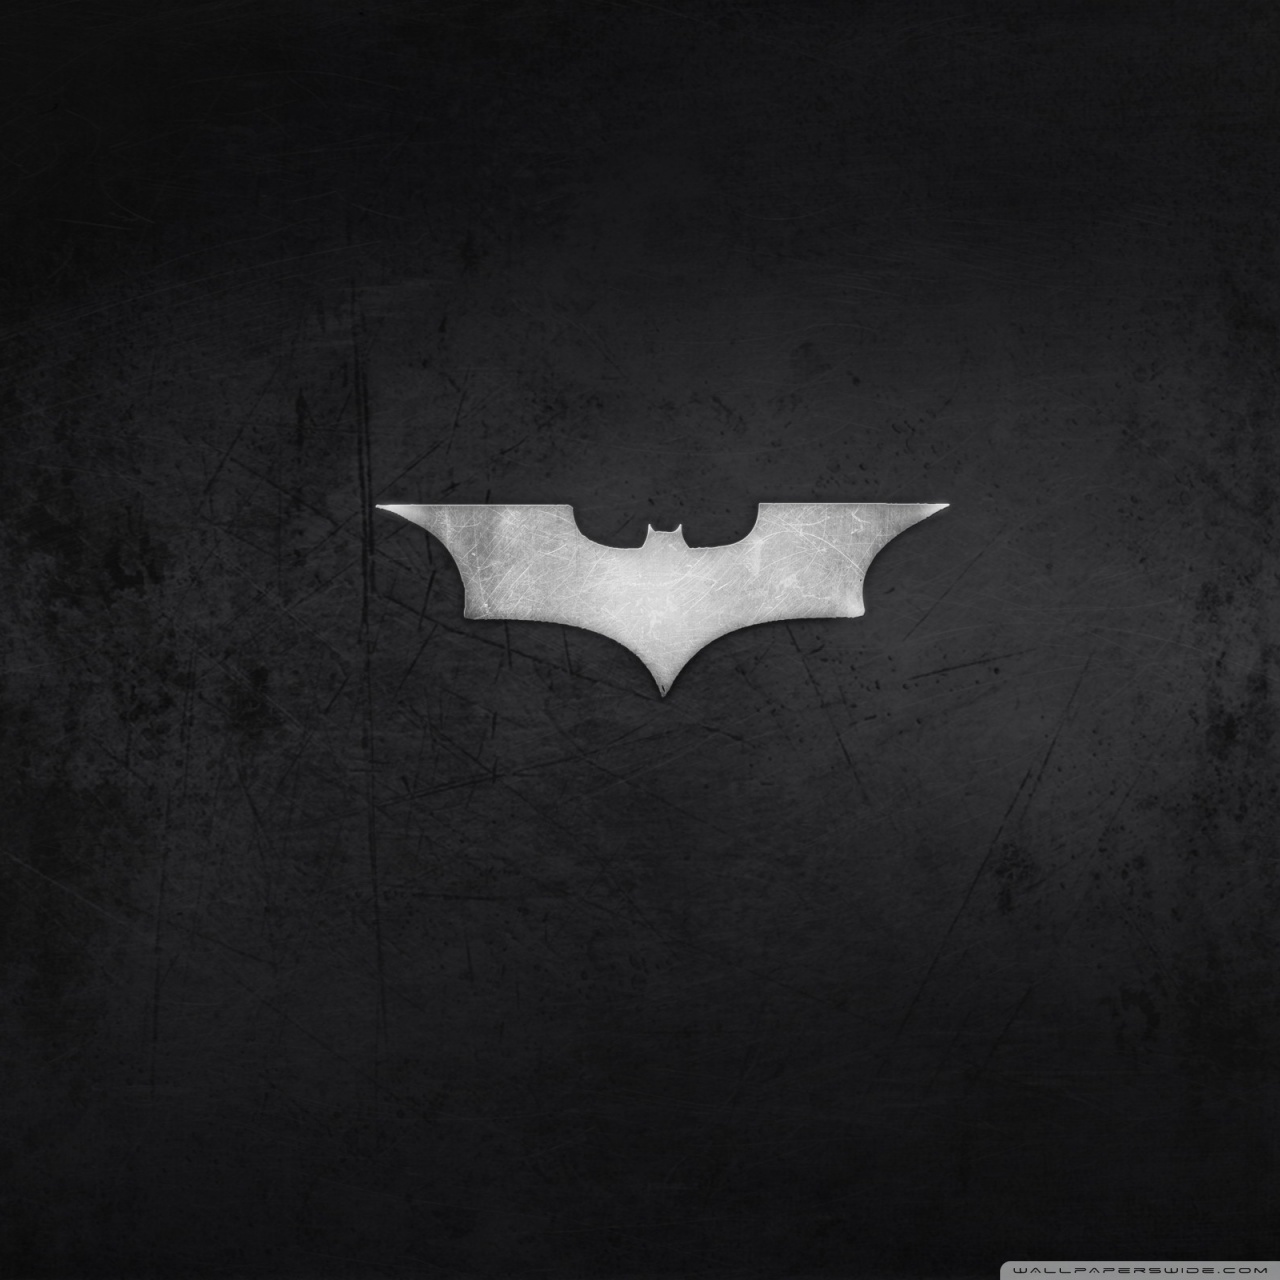 Batman Logo HD desktop wallpaper : High Definition : Fullscreen ...